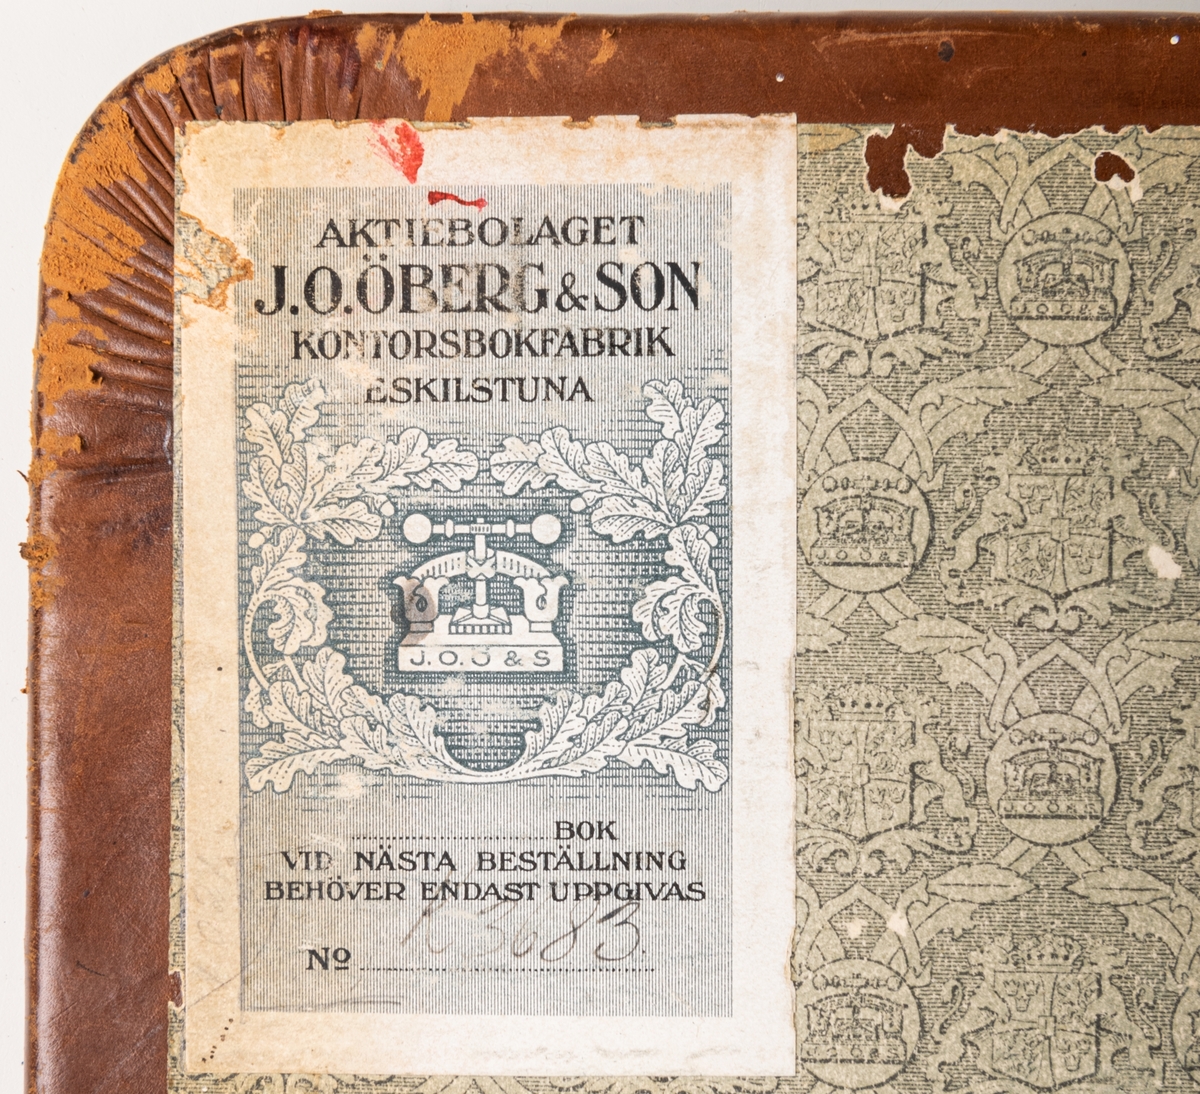 Förrådsbok, optimuspärm, i brunt läder från A.B. J. O. Öberg o son kontorsfabrik Eskilstuna, 1920.
Pärmar av skinnklädda träskivor.